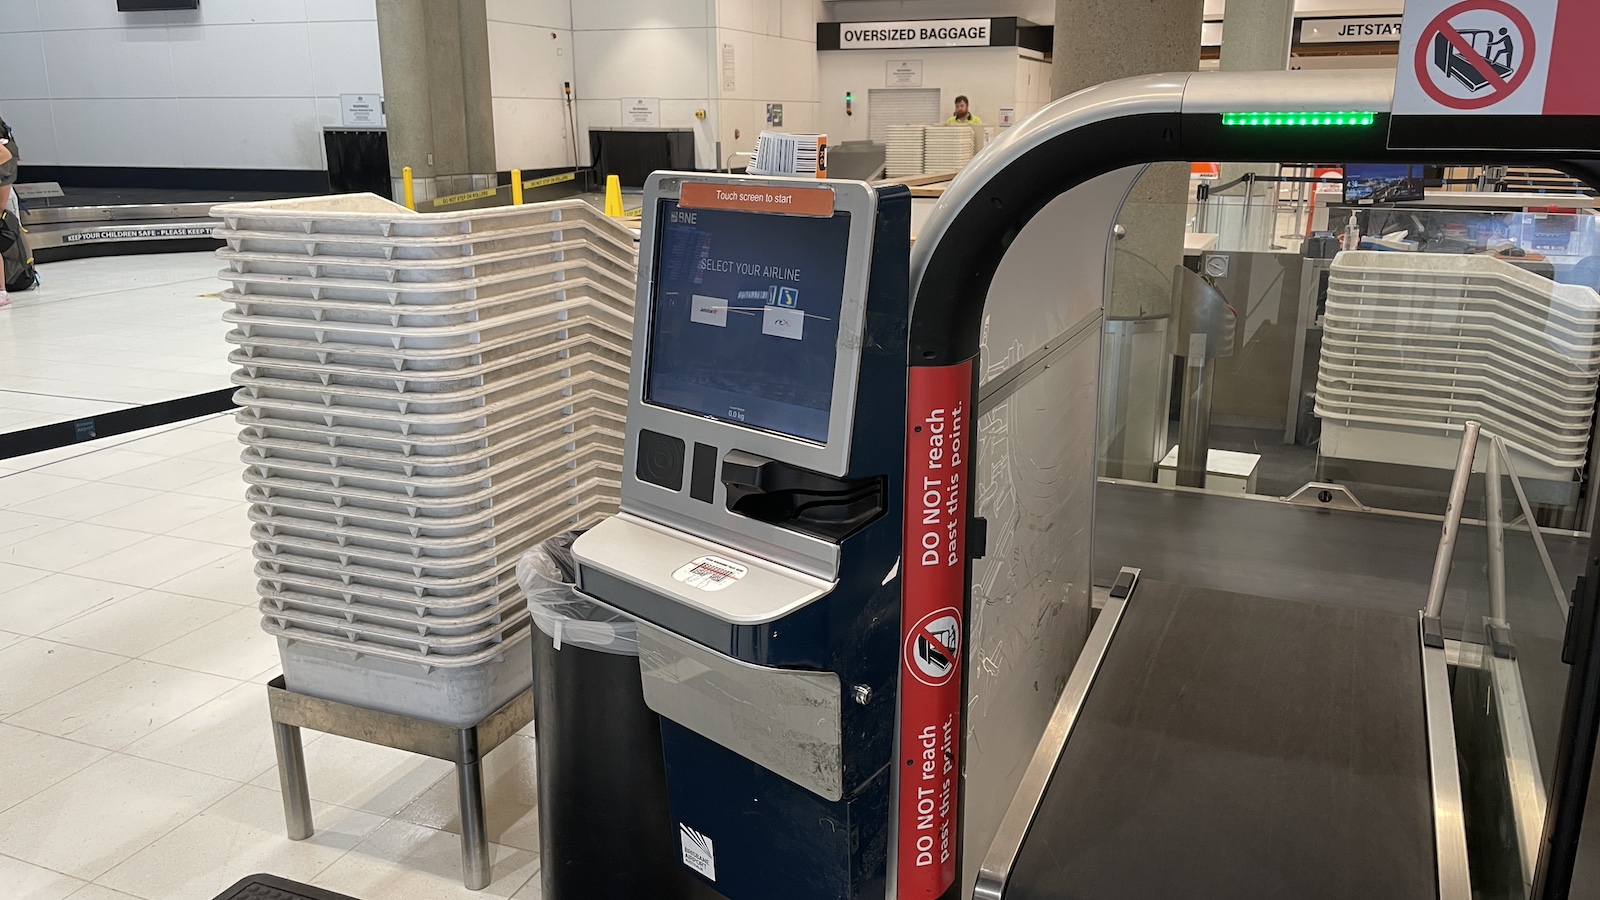 Rex Airlines Brisbane to Sydney Brisbane Airport Bag Drop Machine Point Hacks